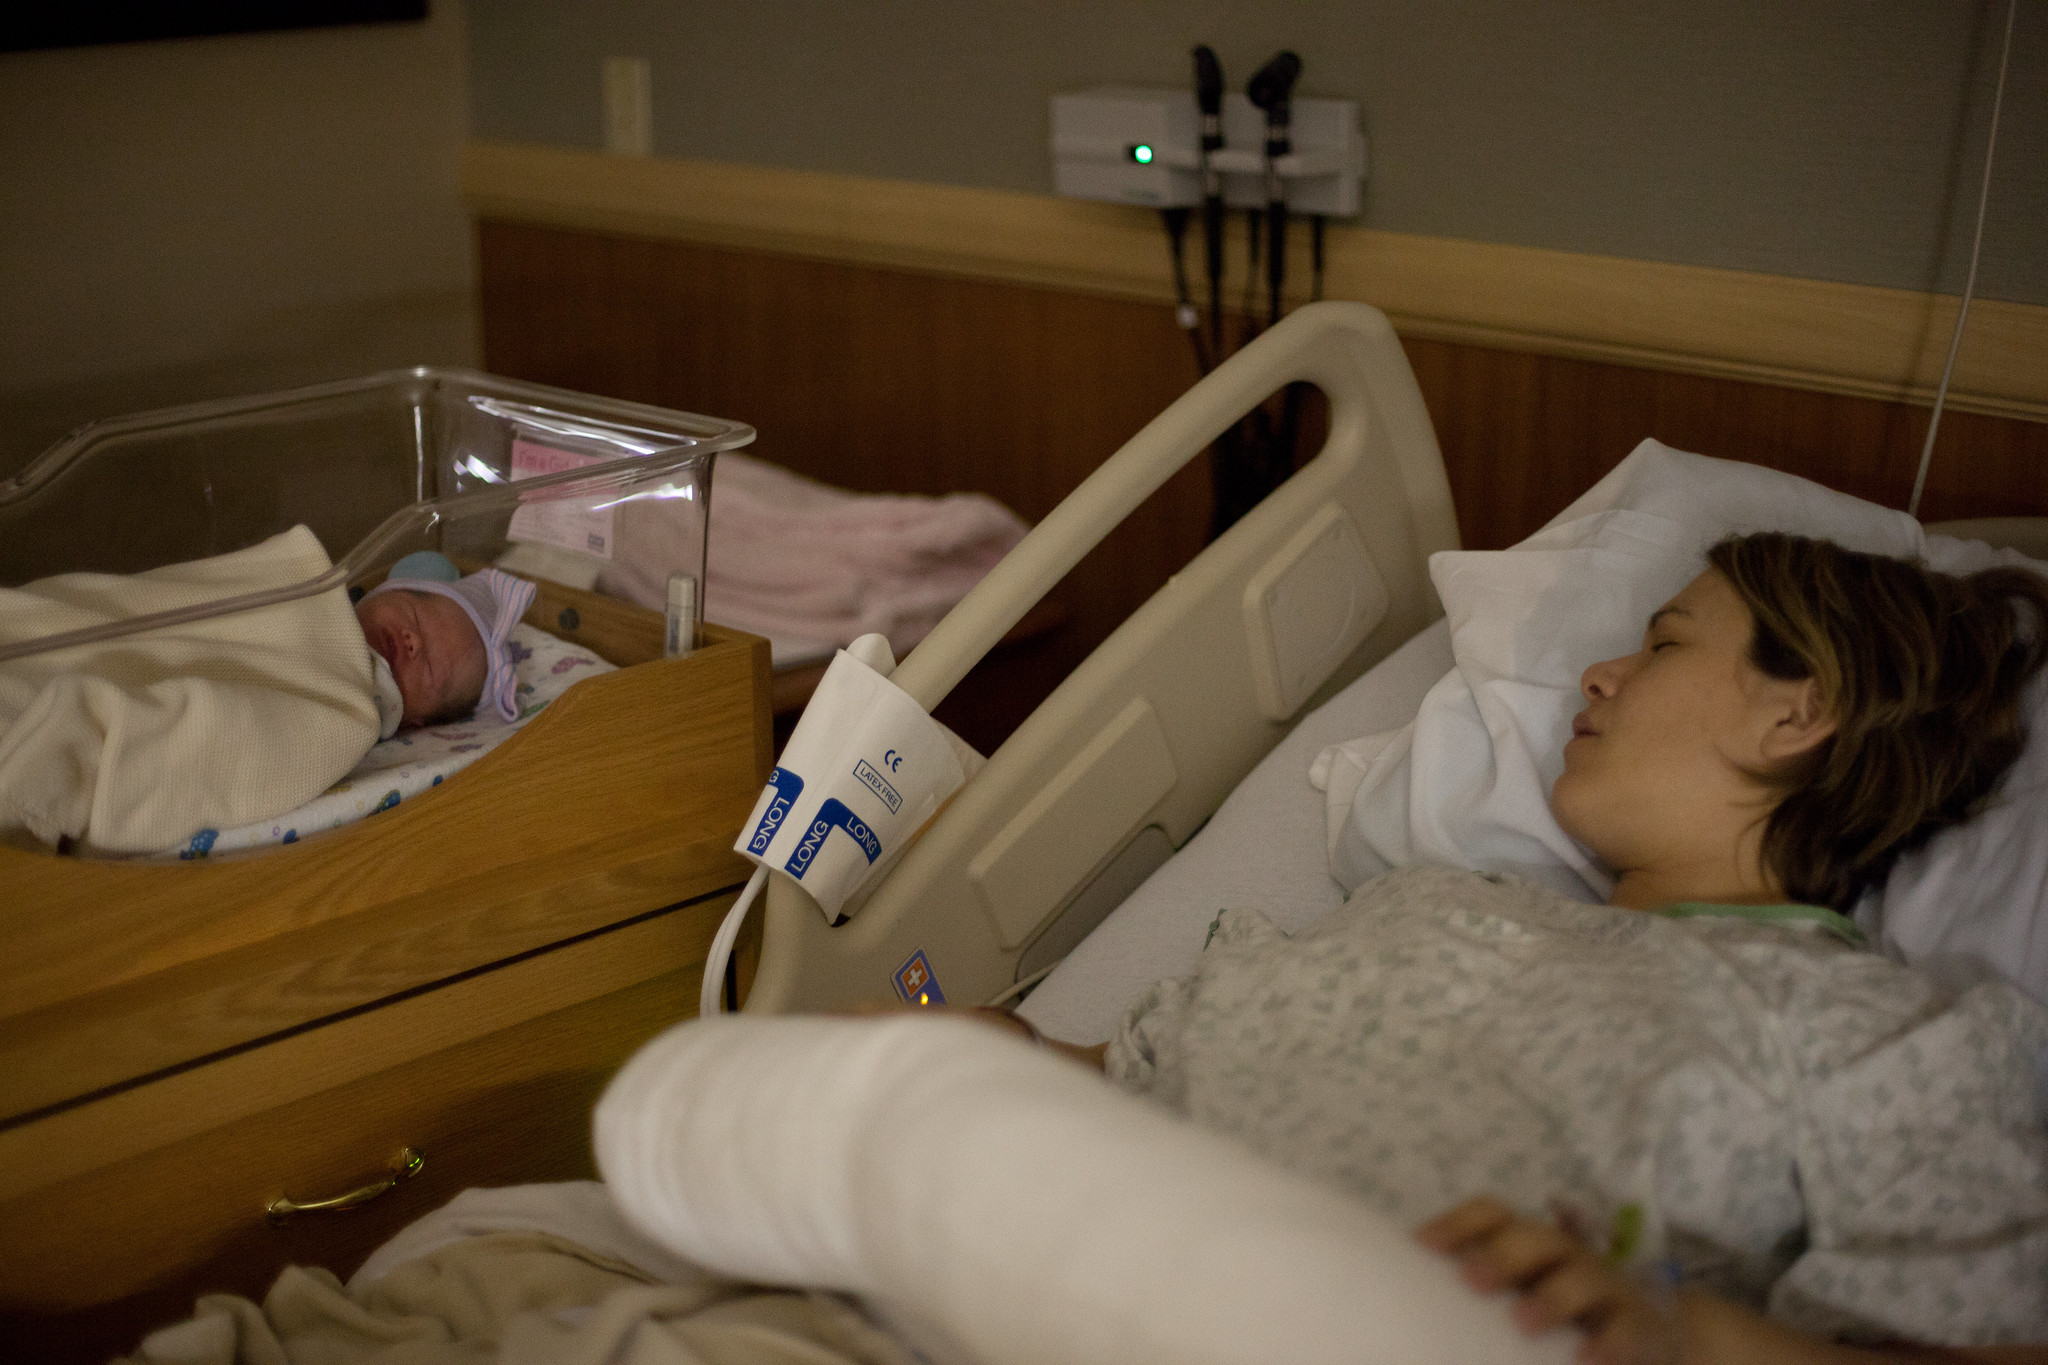 Une femme dormant dans un lit d'hôpital avec son nouveau-né endormi à côté d'elle dans un berceau | Source : Flickr